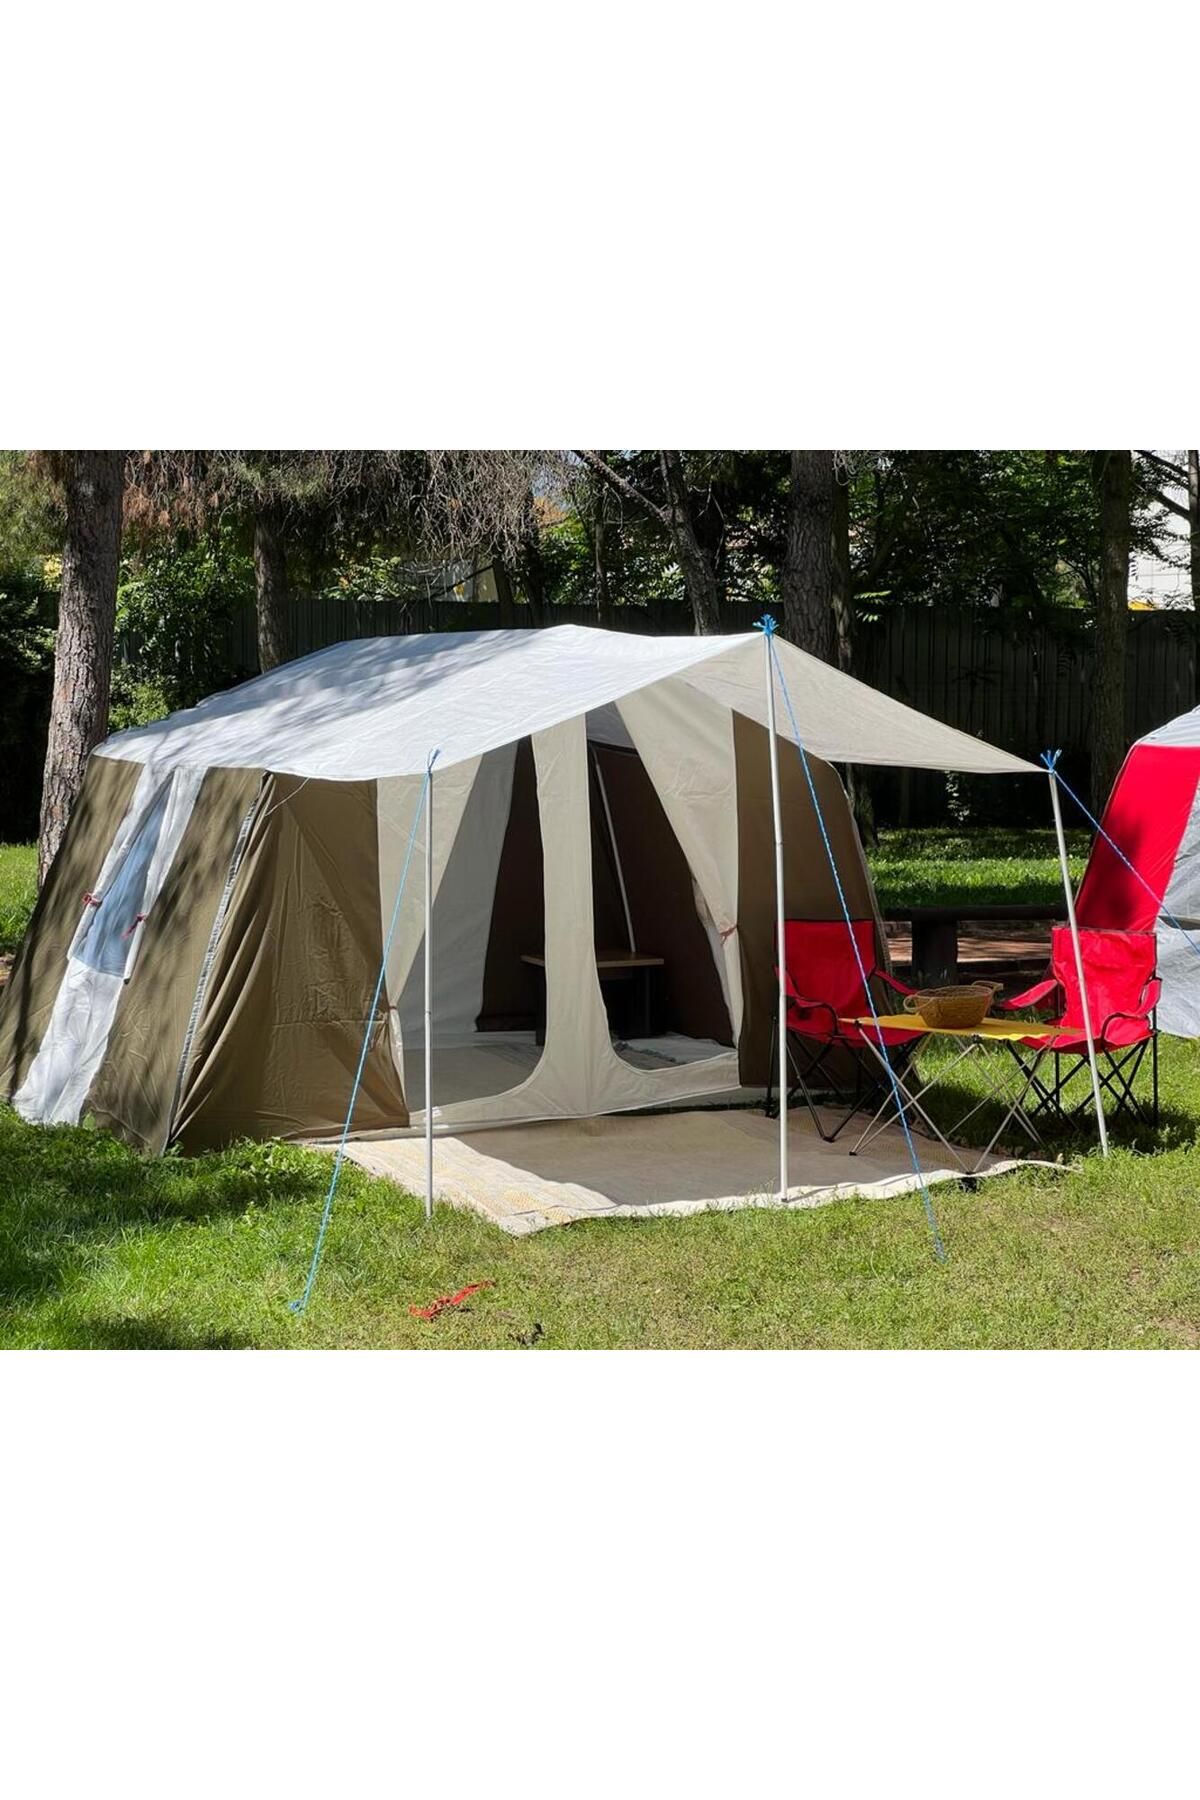 yamaç çadır Ferah Kaliteli Kumaşla Haki Renkte Kamp Çadırı